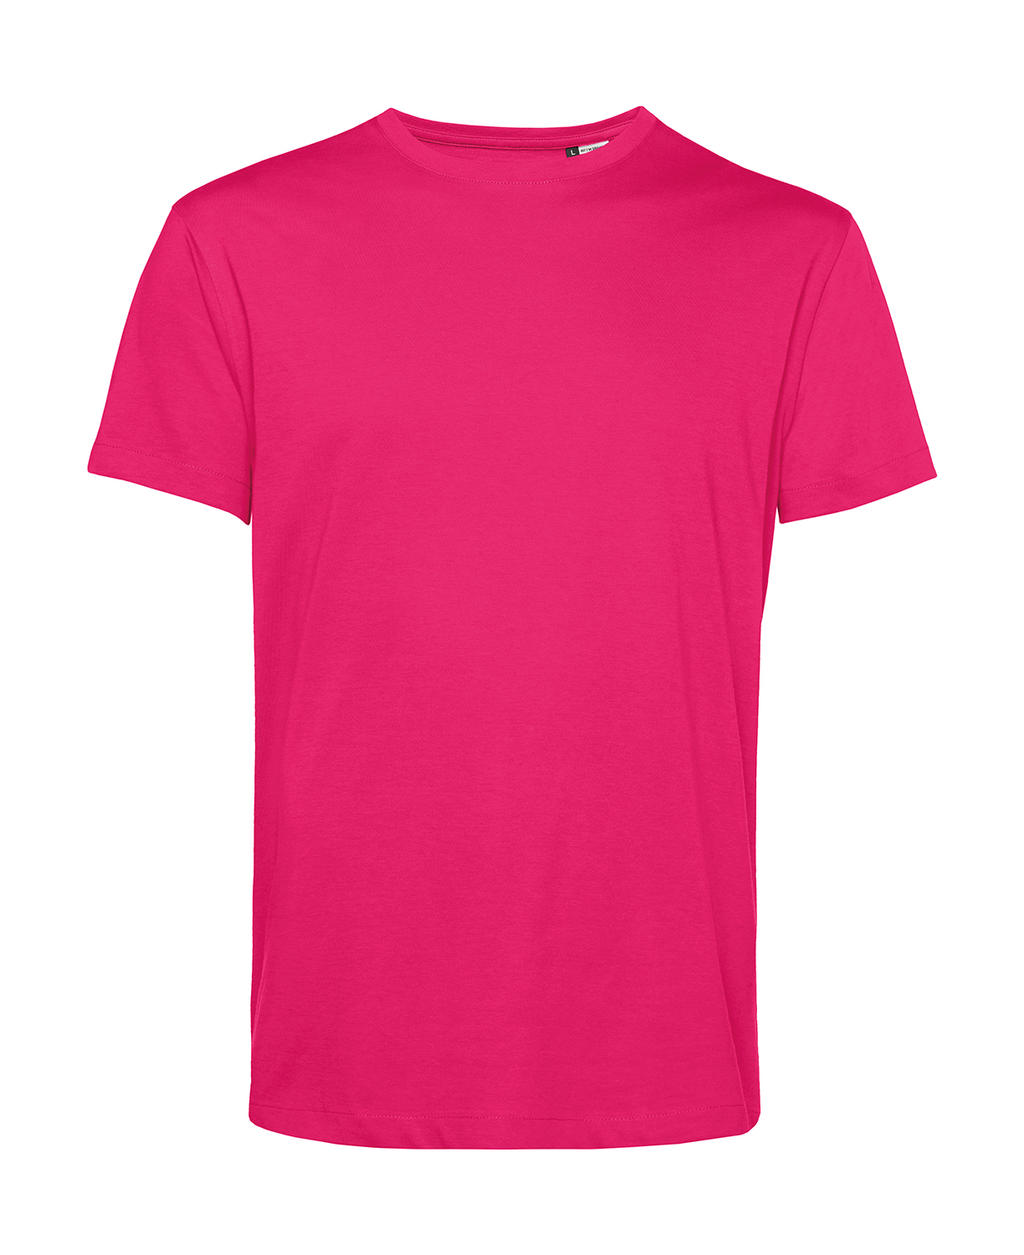 Tričko BC Organic Inspire E150 - tmavě růžové, XS